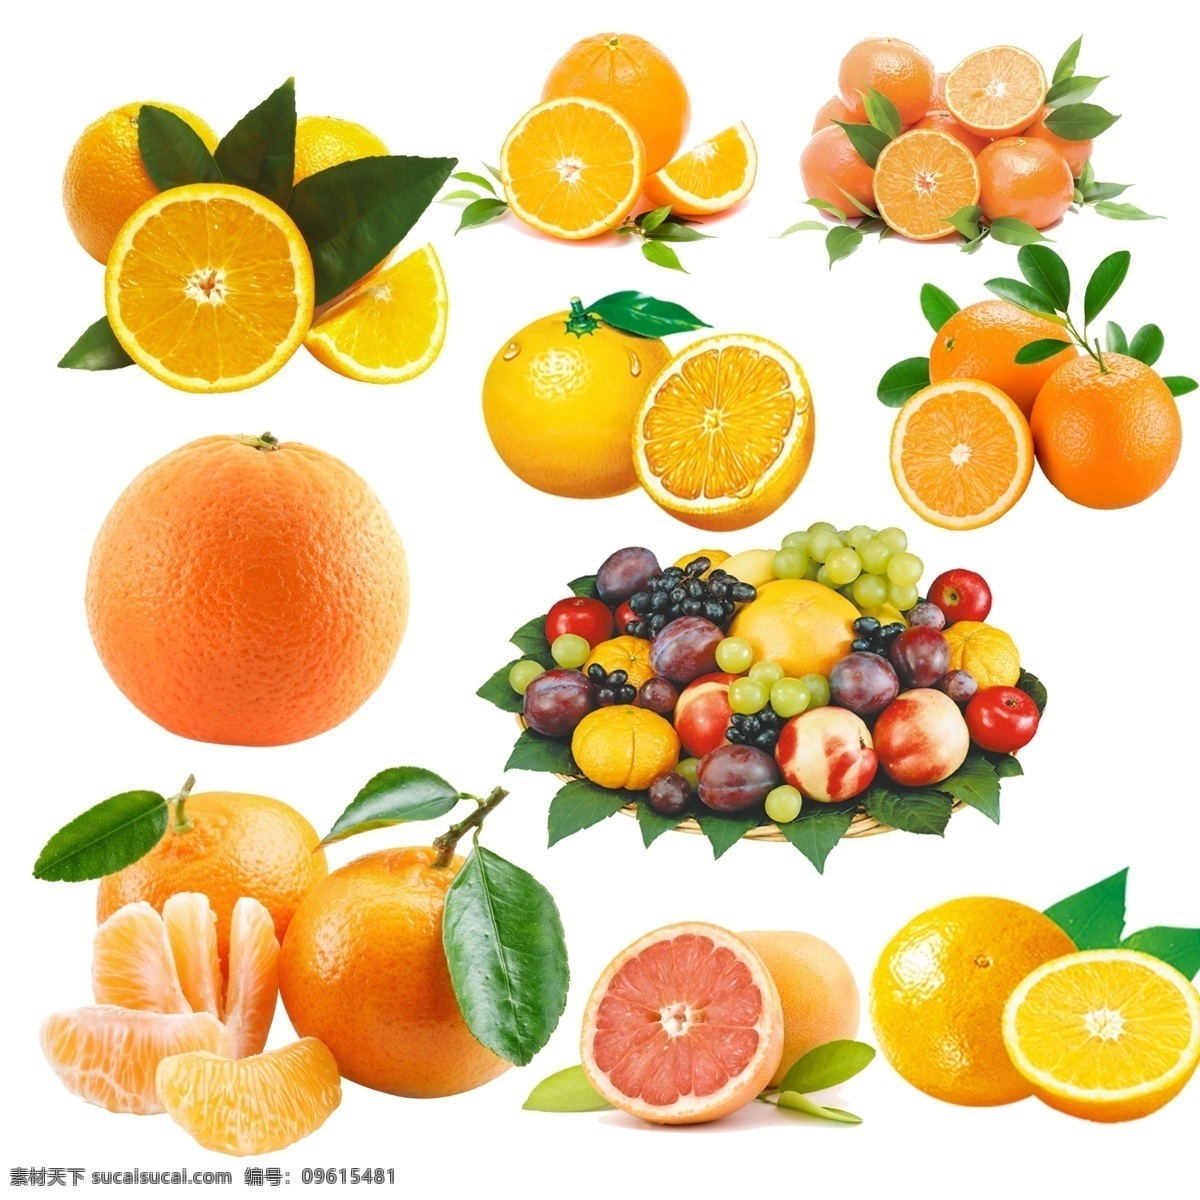 橘子 秋橘 黄橘子 甜橘子 橘子果肉 拨开橘子 橘子汁 进口橘子 新鲜橘子 水果 生物世界